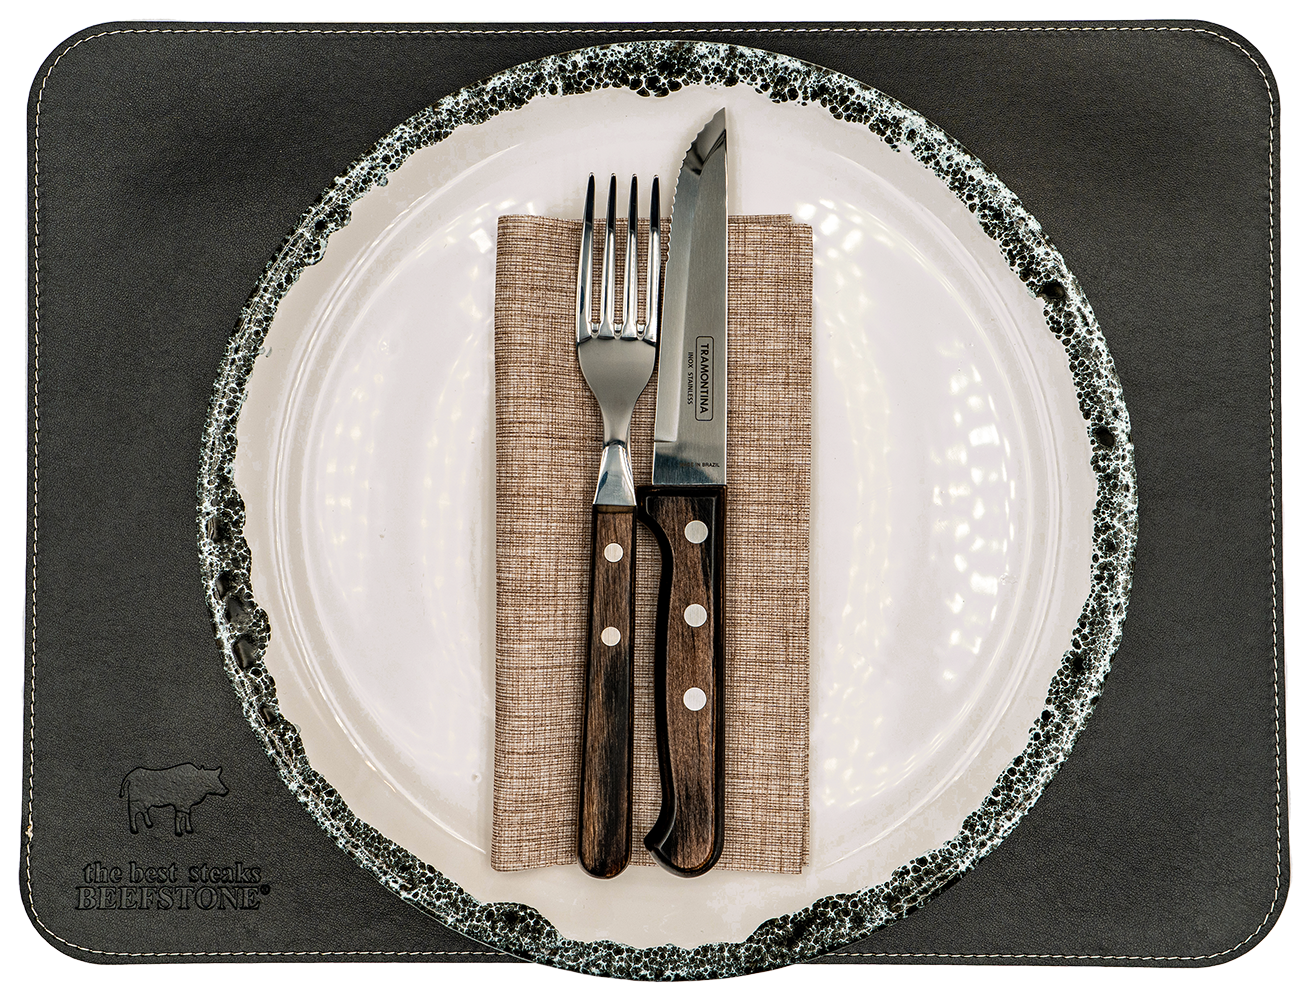 1 Original Beefstone® Tischset aus veganem PU Kunstleder - doppelseitig - 40 x 30 cm - Schwarz / Hellbraun